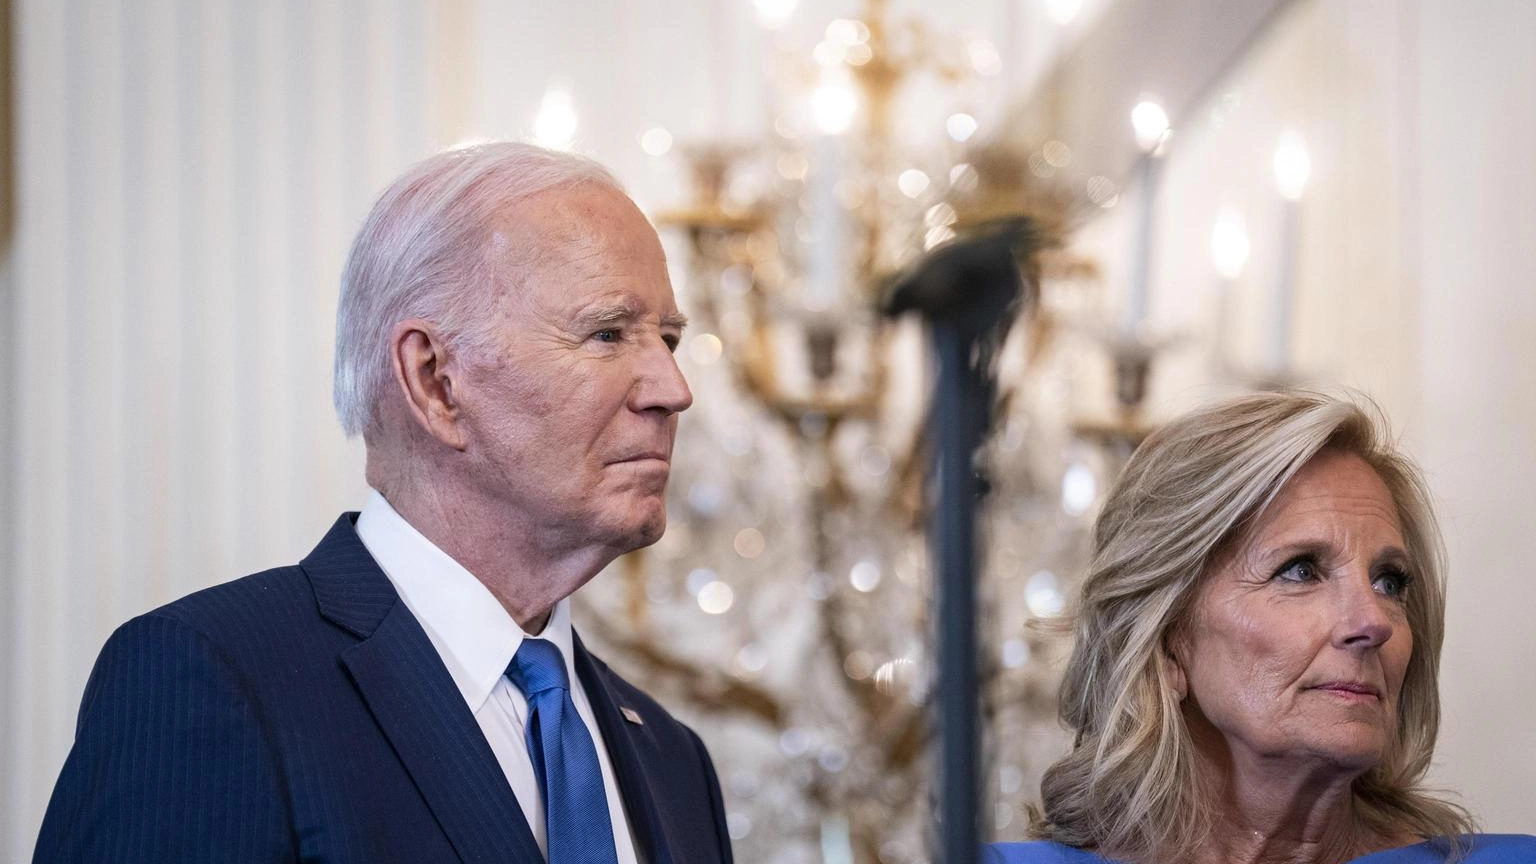 Biden, 'prego per la piena guarigione di Kate'